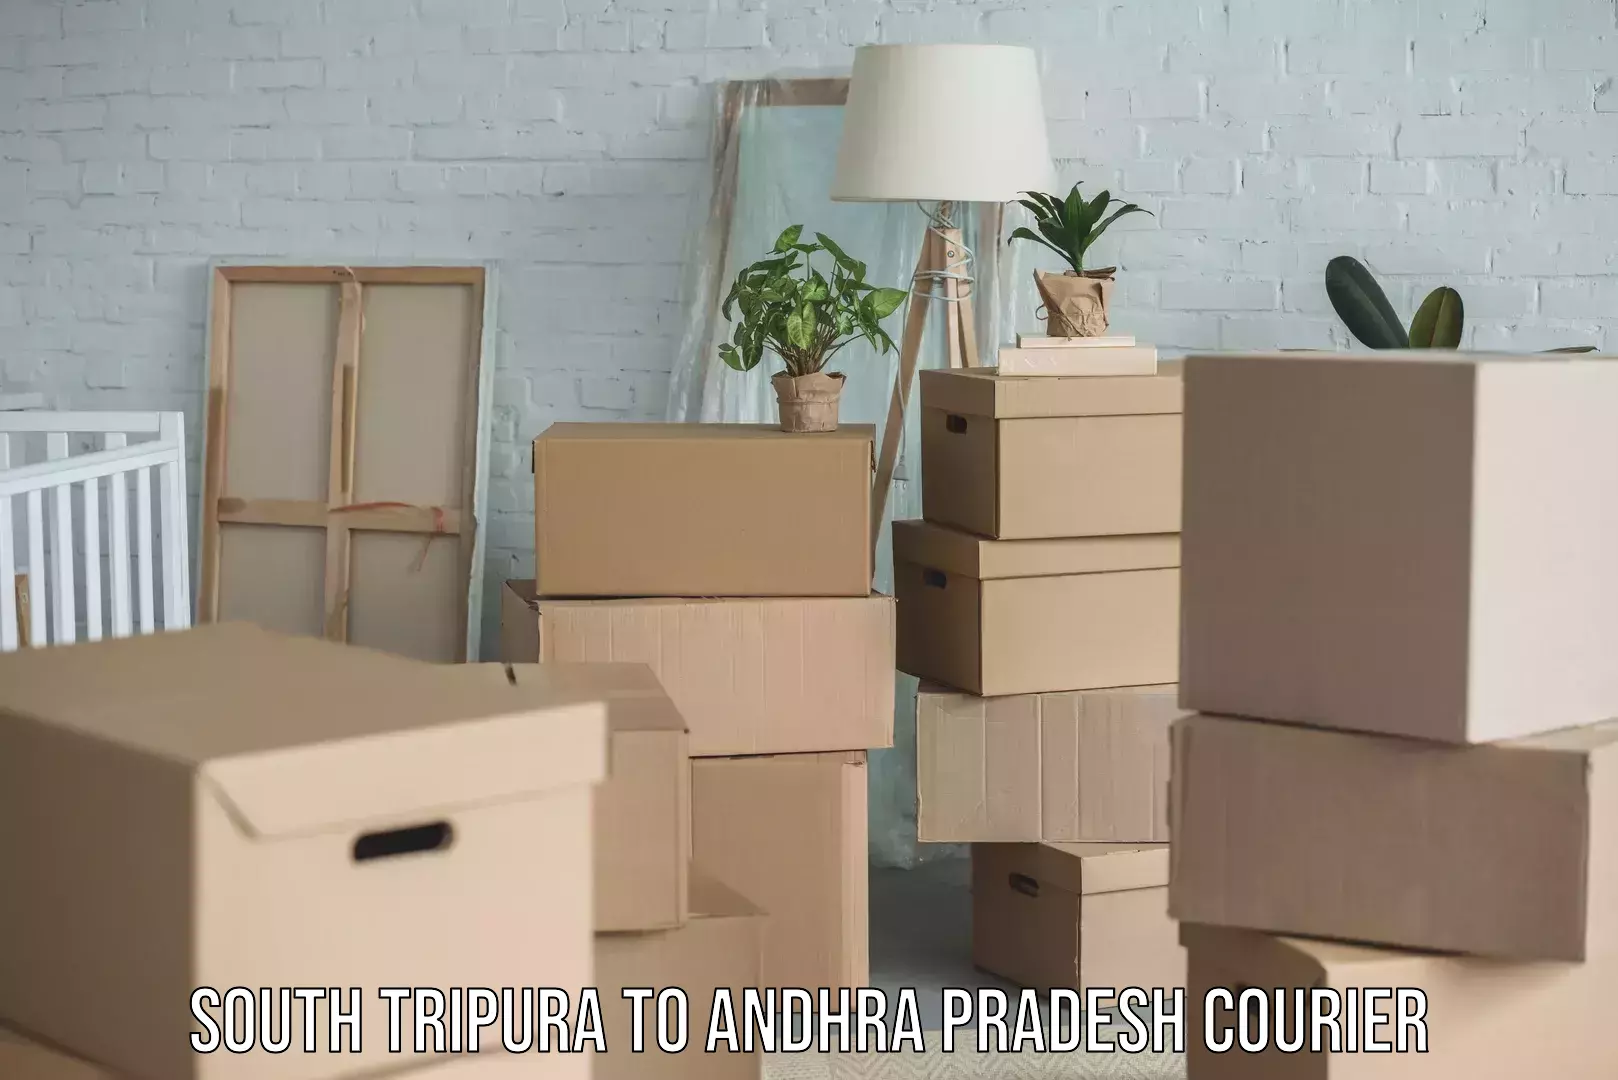 Express logistics providers South Tripura to Andhra Pradesh